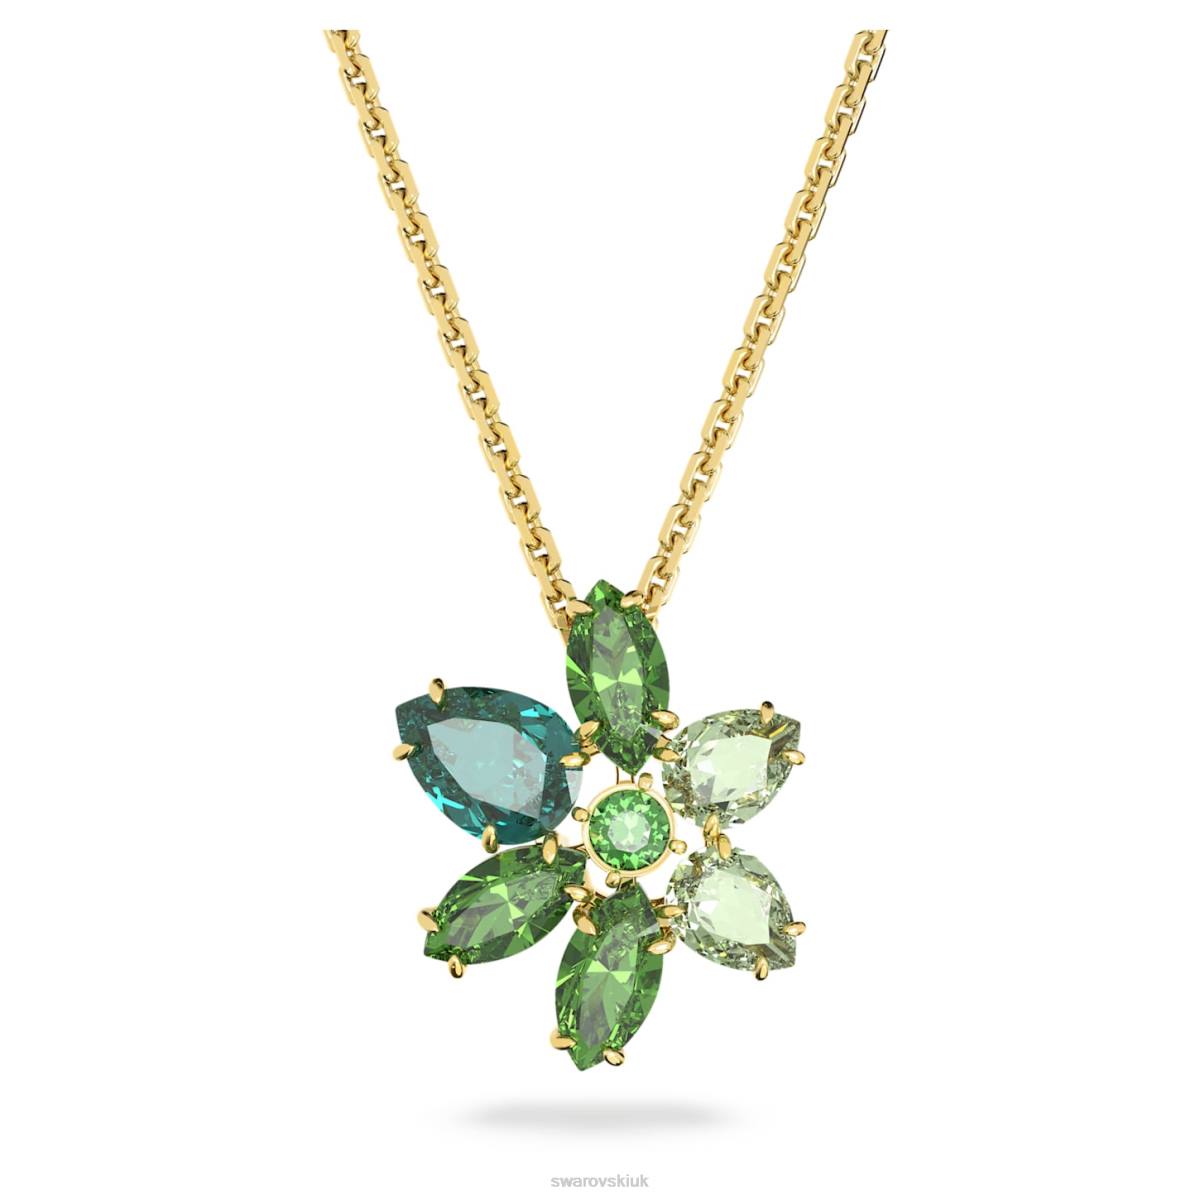 Jewelry Swarovski Gema pendant Mixed cuts, Flower, Green, Gold-tone plated 48JX163